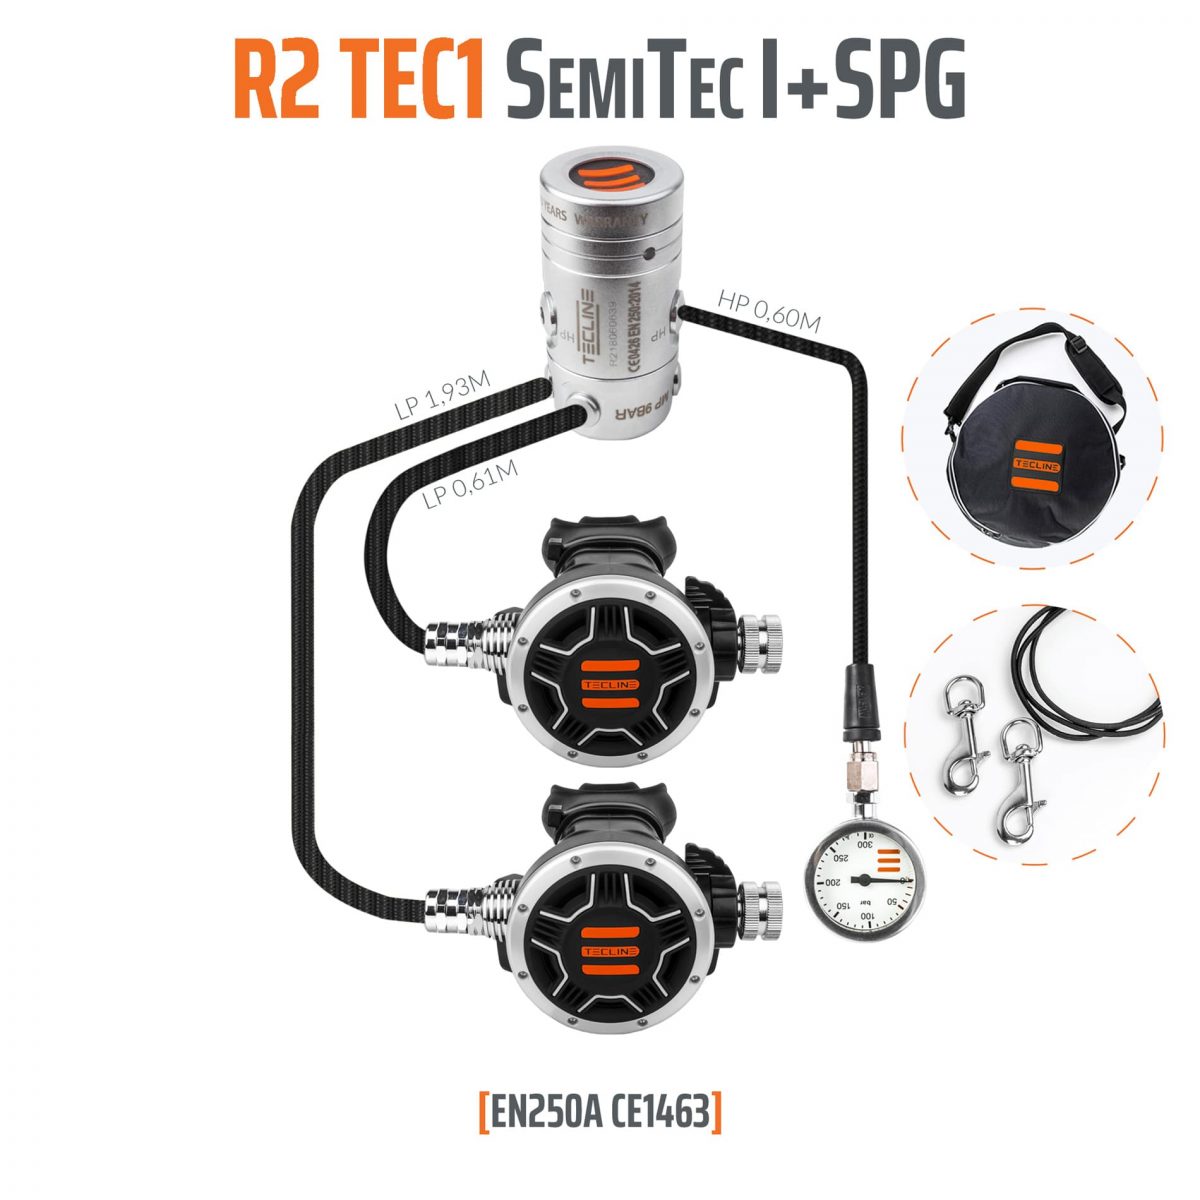 REGULATOR R2 TEC1 SEMITEC I SET WITH SPG - EN250A 10005-05 opti